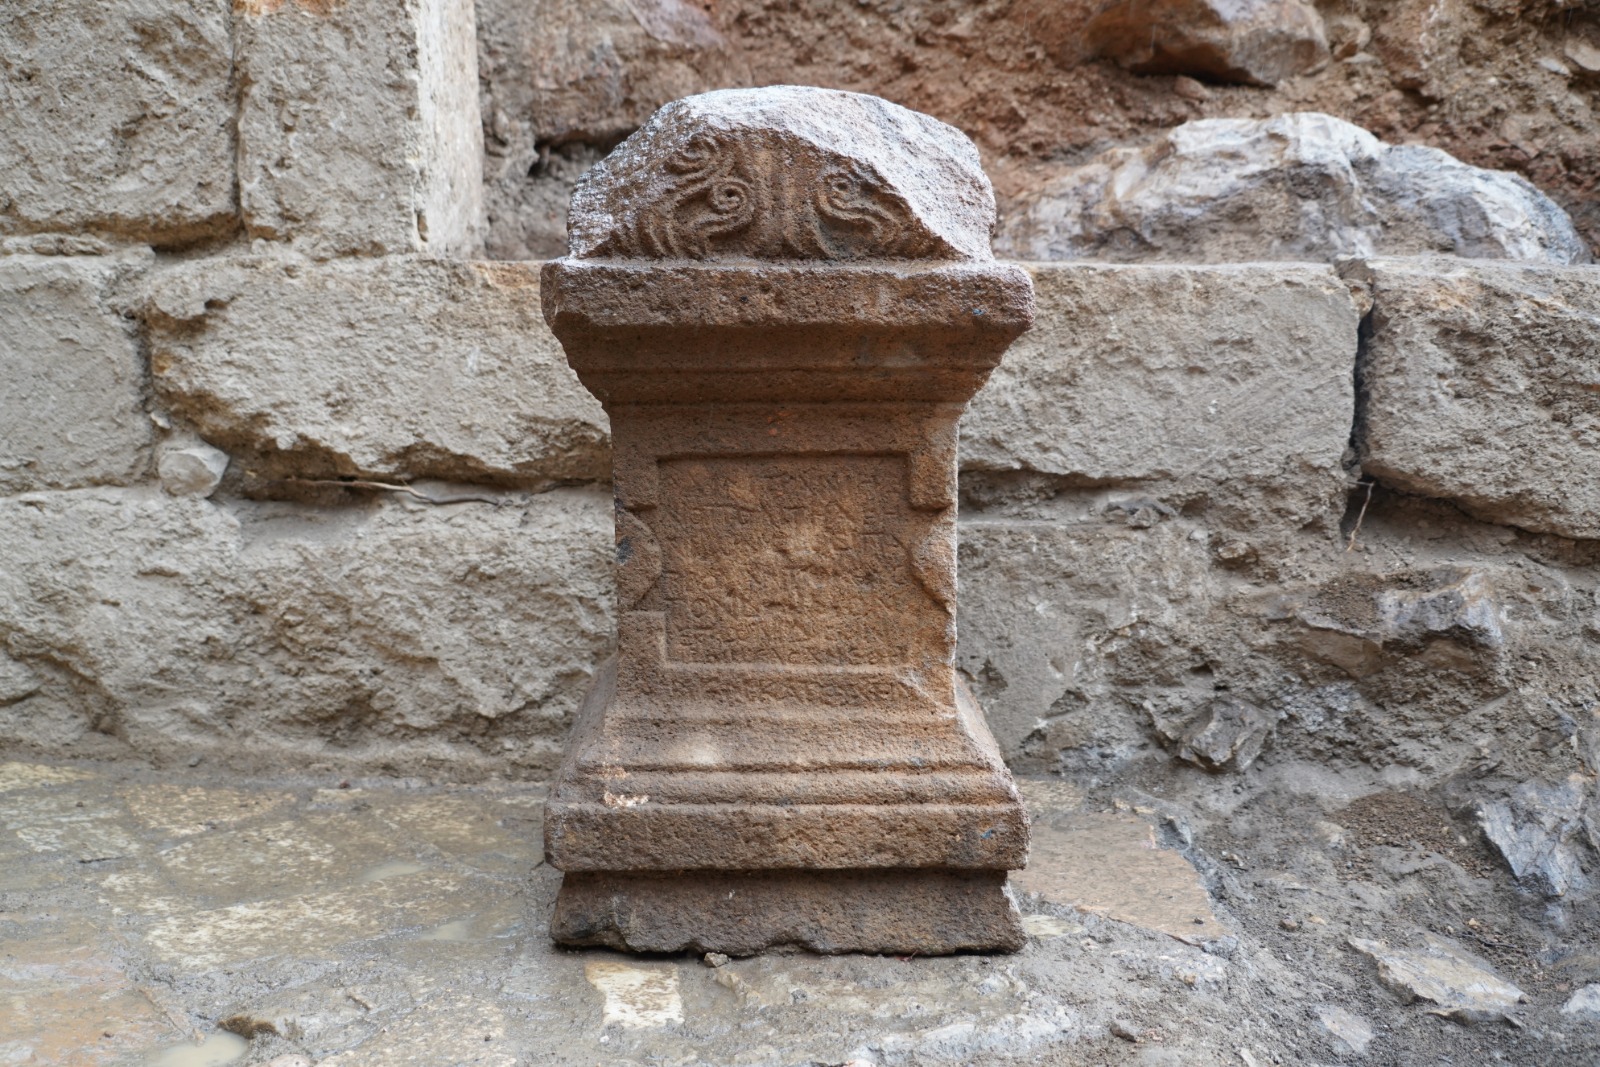 מזבח לאל פאן נושא כתובת יוונית מהמאה השנייה לספירה התגלה בחפירות בשמורת הטבע הבניאס